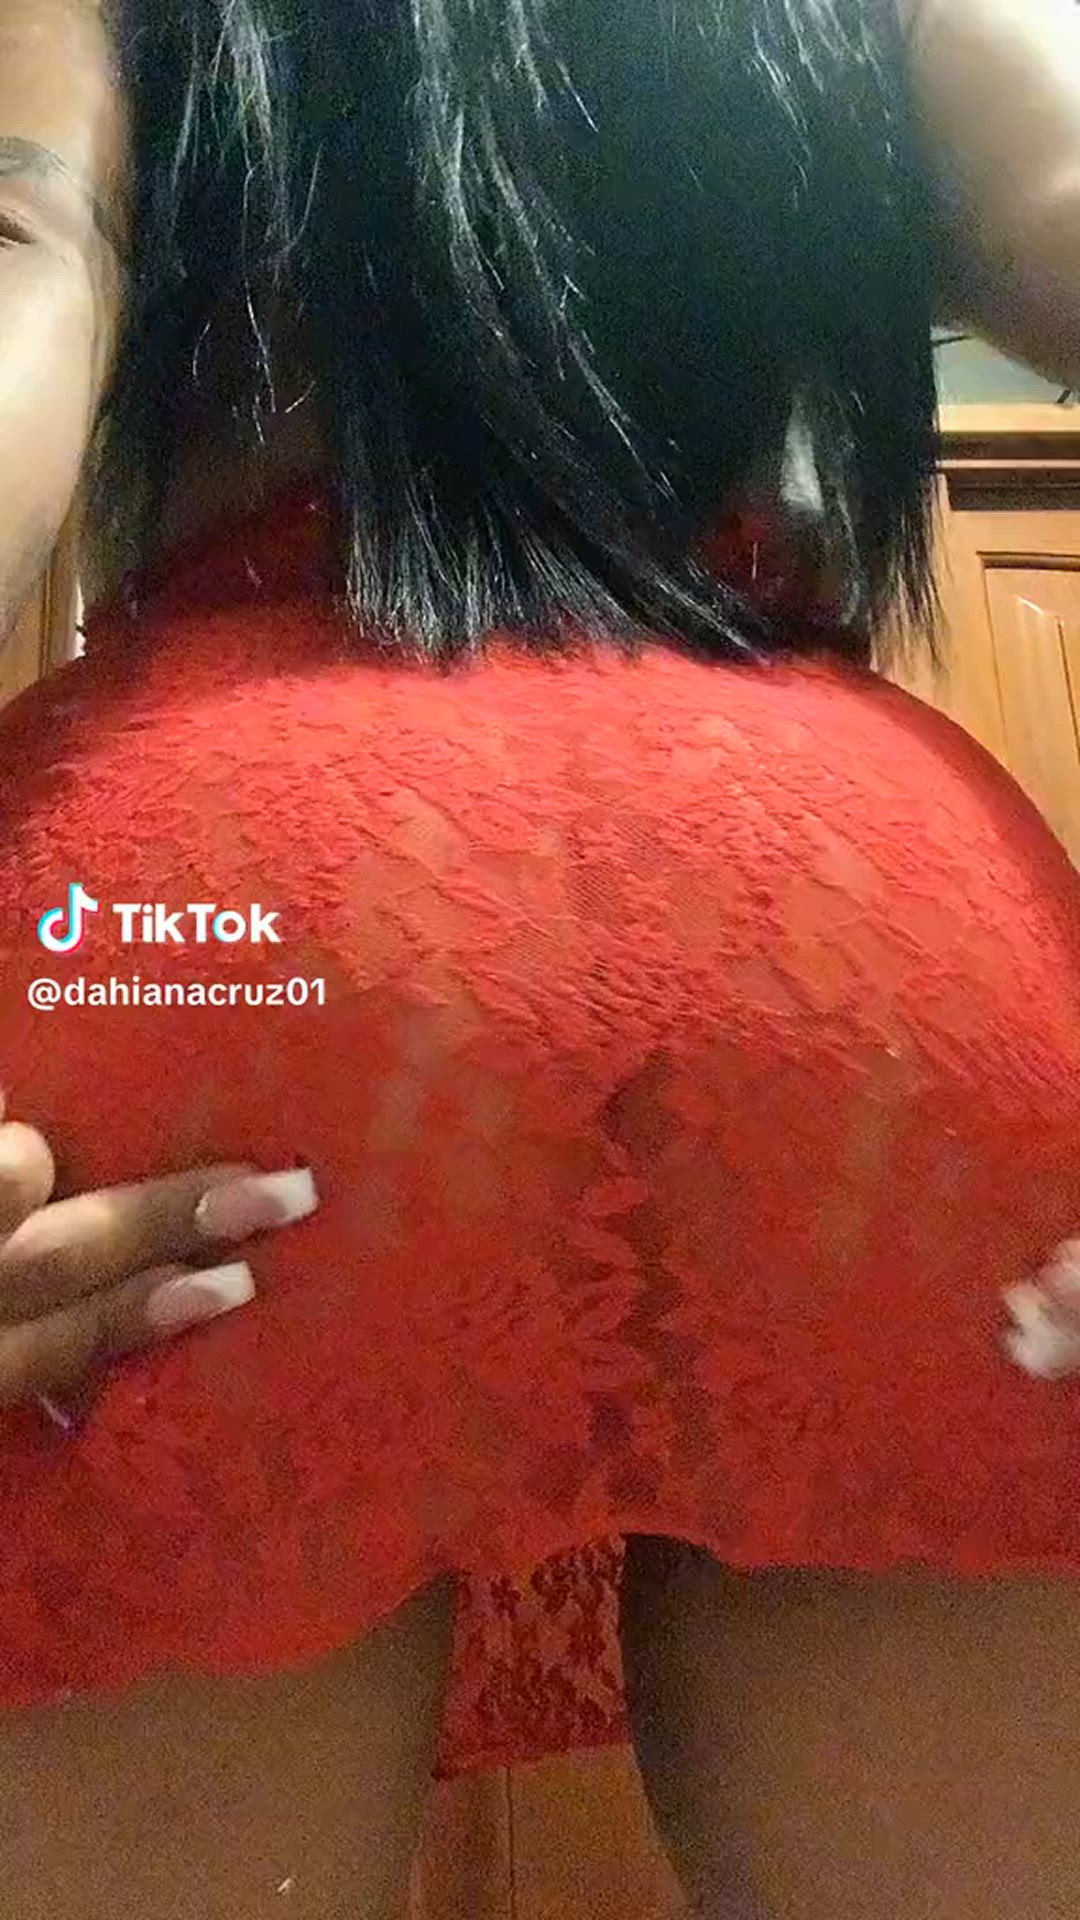 Ass porn video with onlyfans model Dahiana Cruz <strong>@dahiacruz01</strong>